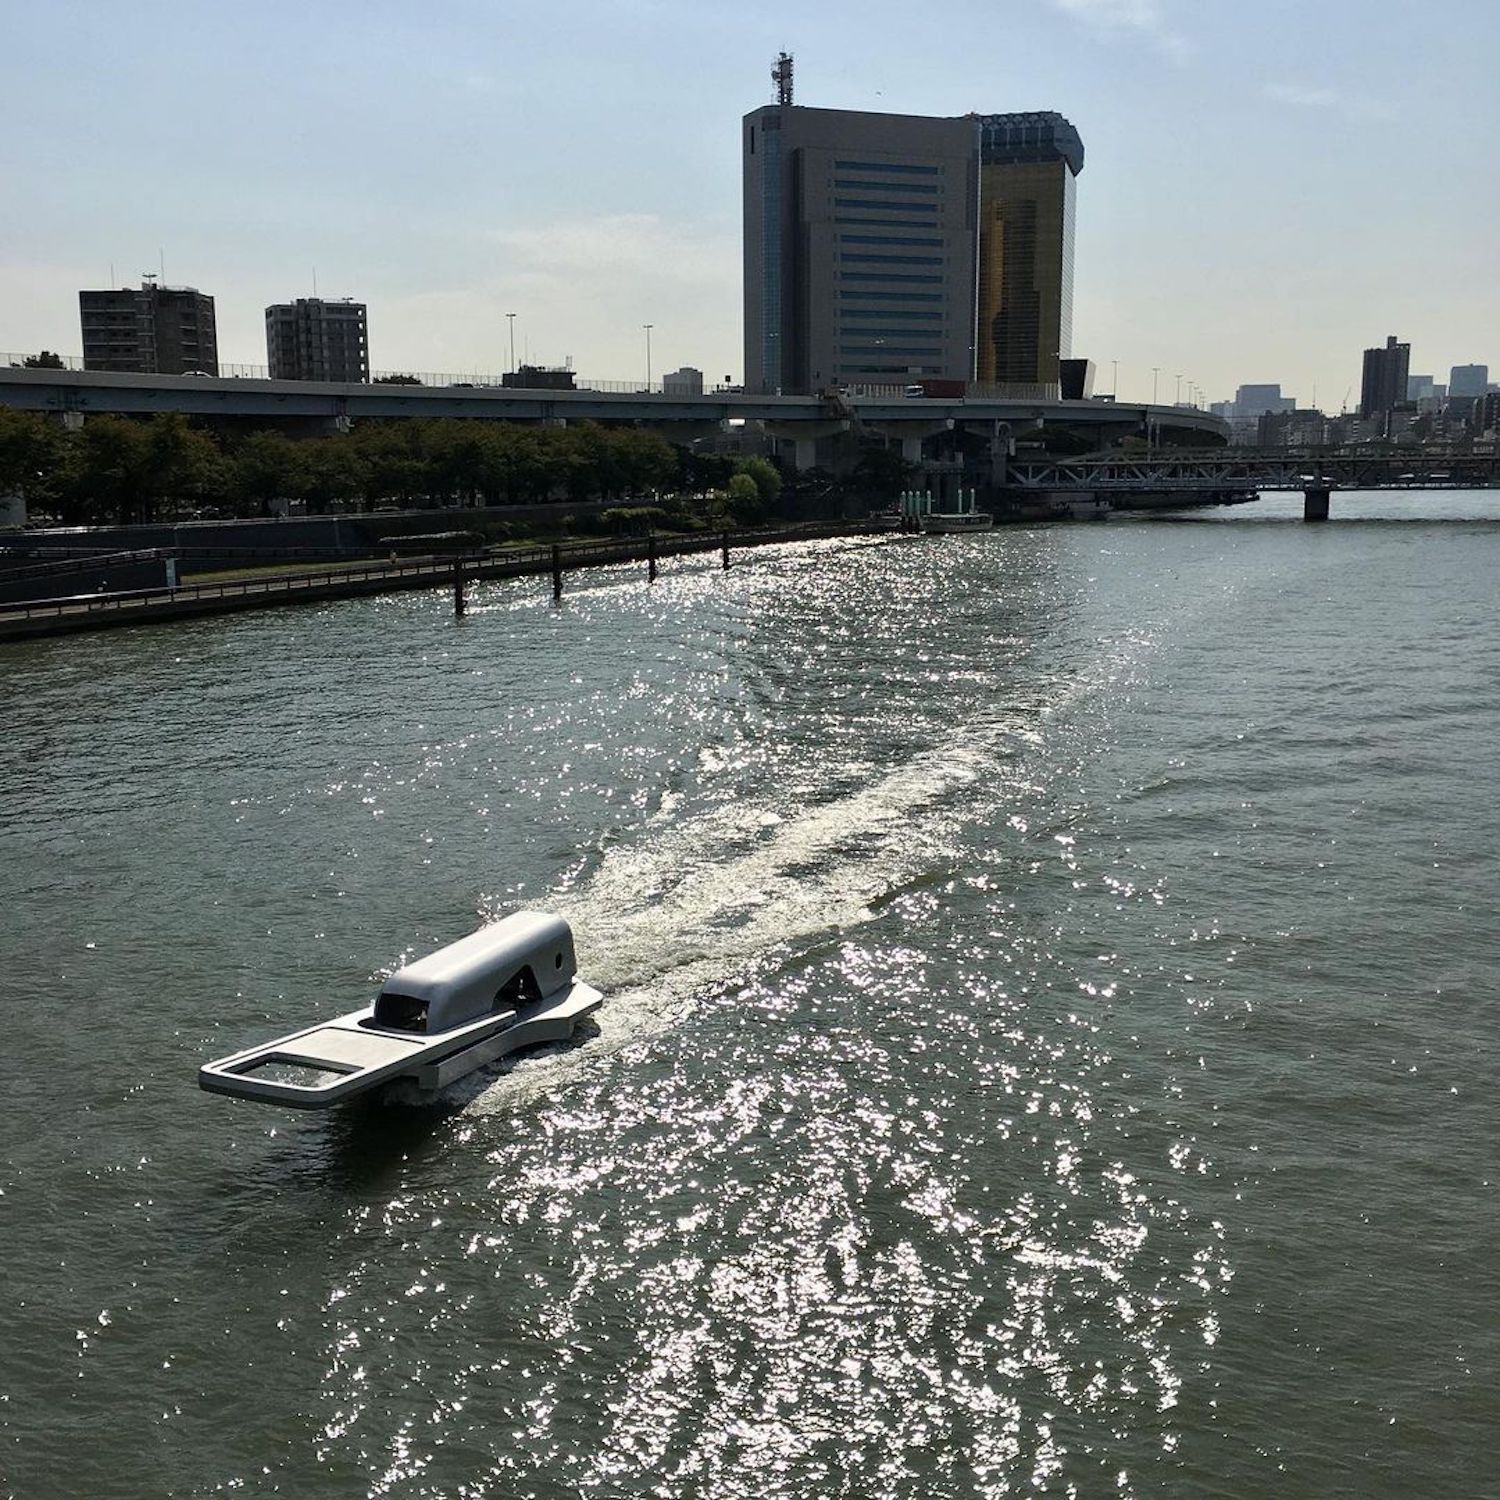 Un bateau en forme de fermeture éclair qui semble "ouvrir le fleuve" par le designer Yasuhiro Suzuki